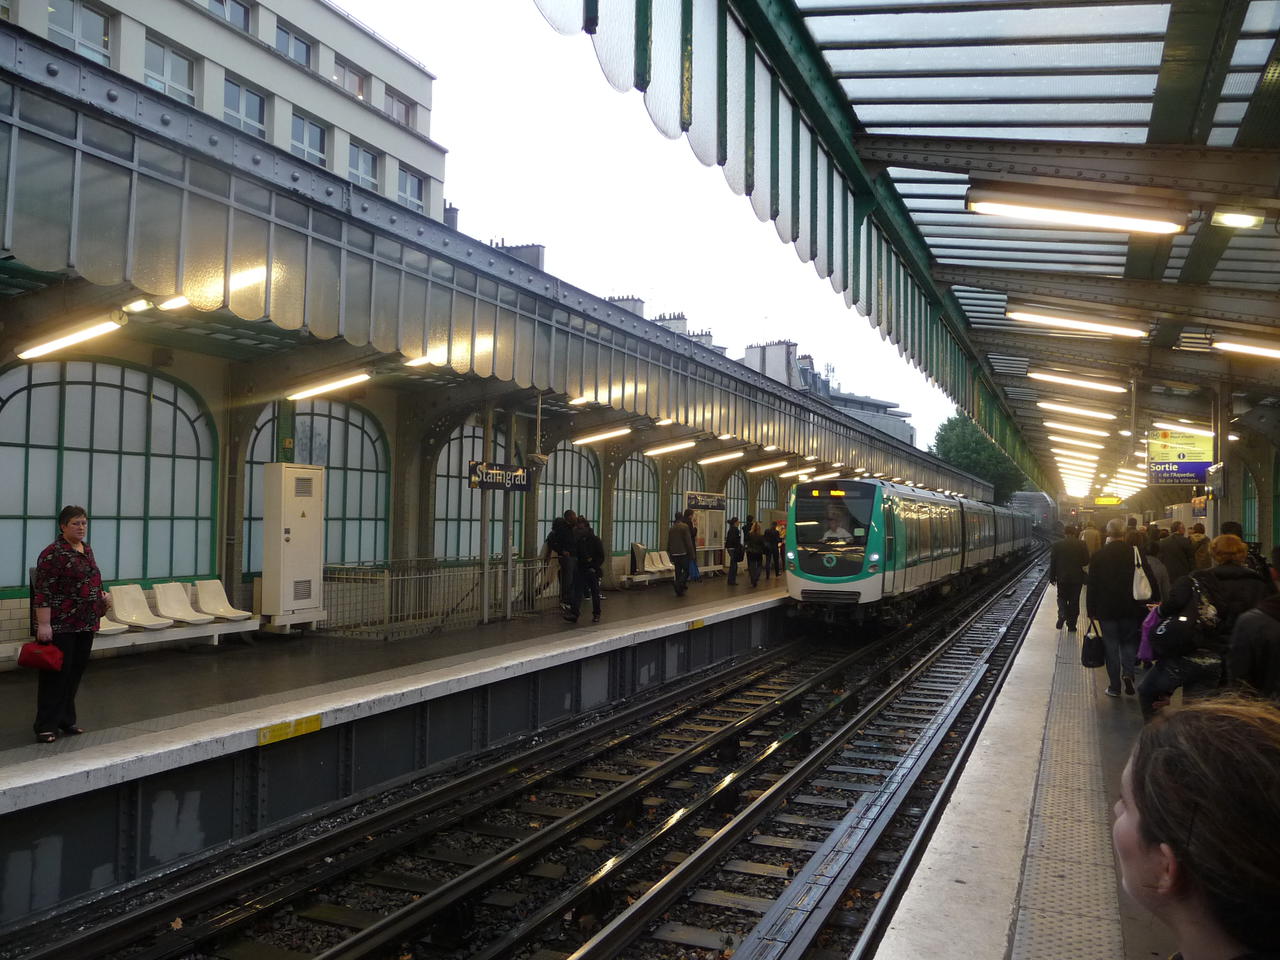 Frankreich-Reisebericht: "Die Pariser Metro"